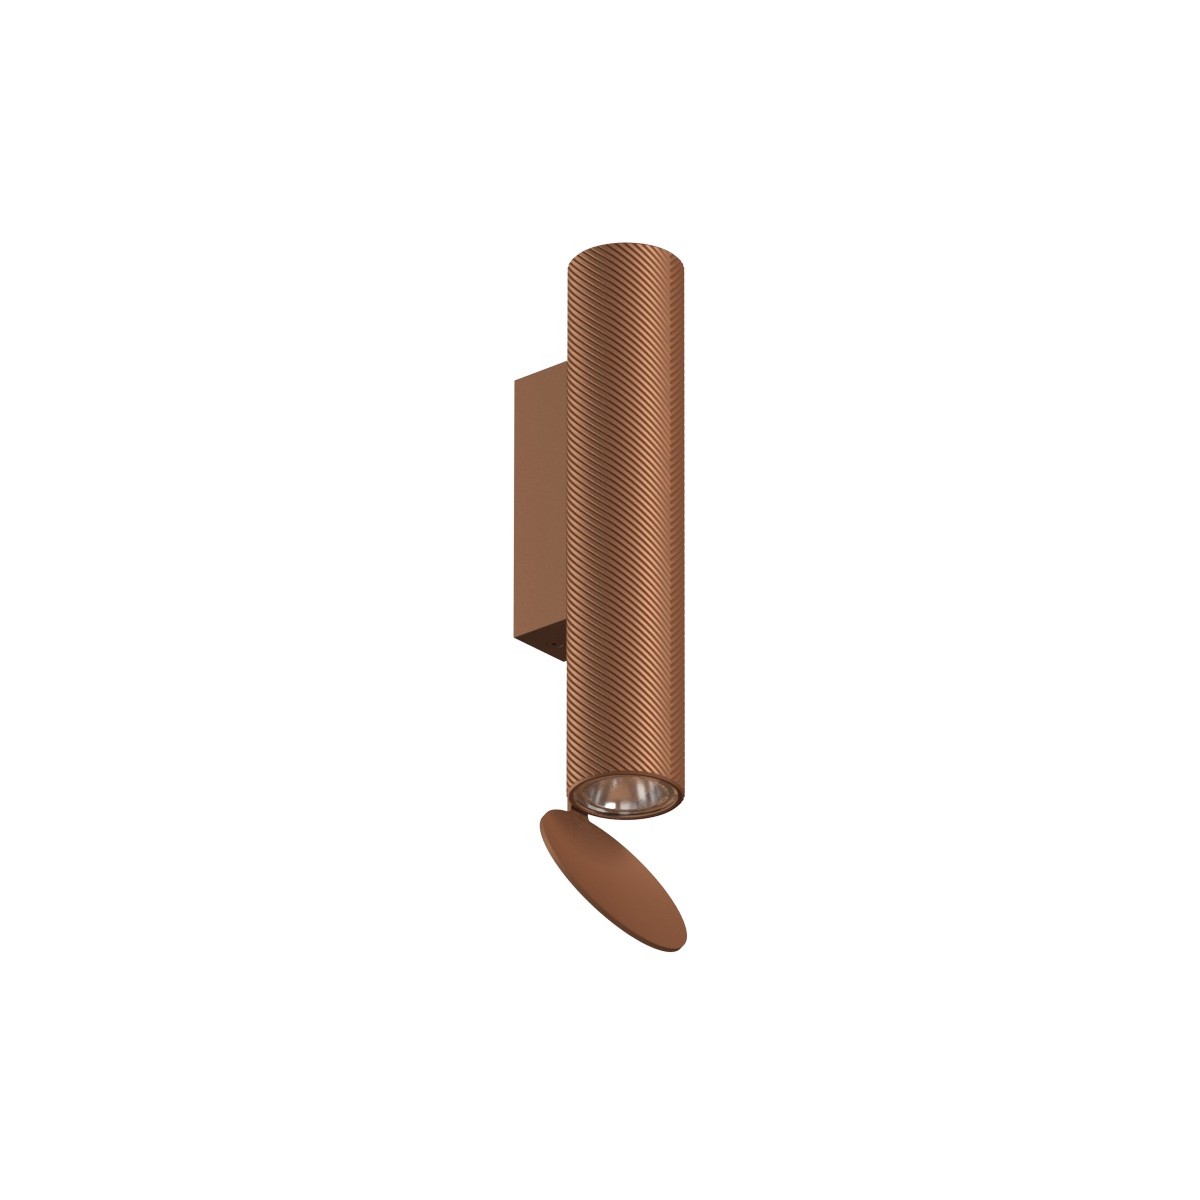 Flauta H22,5cm – Spiga, anodized copper - indoor